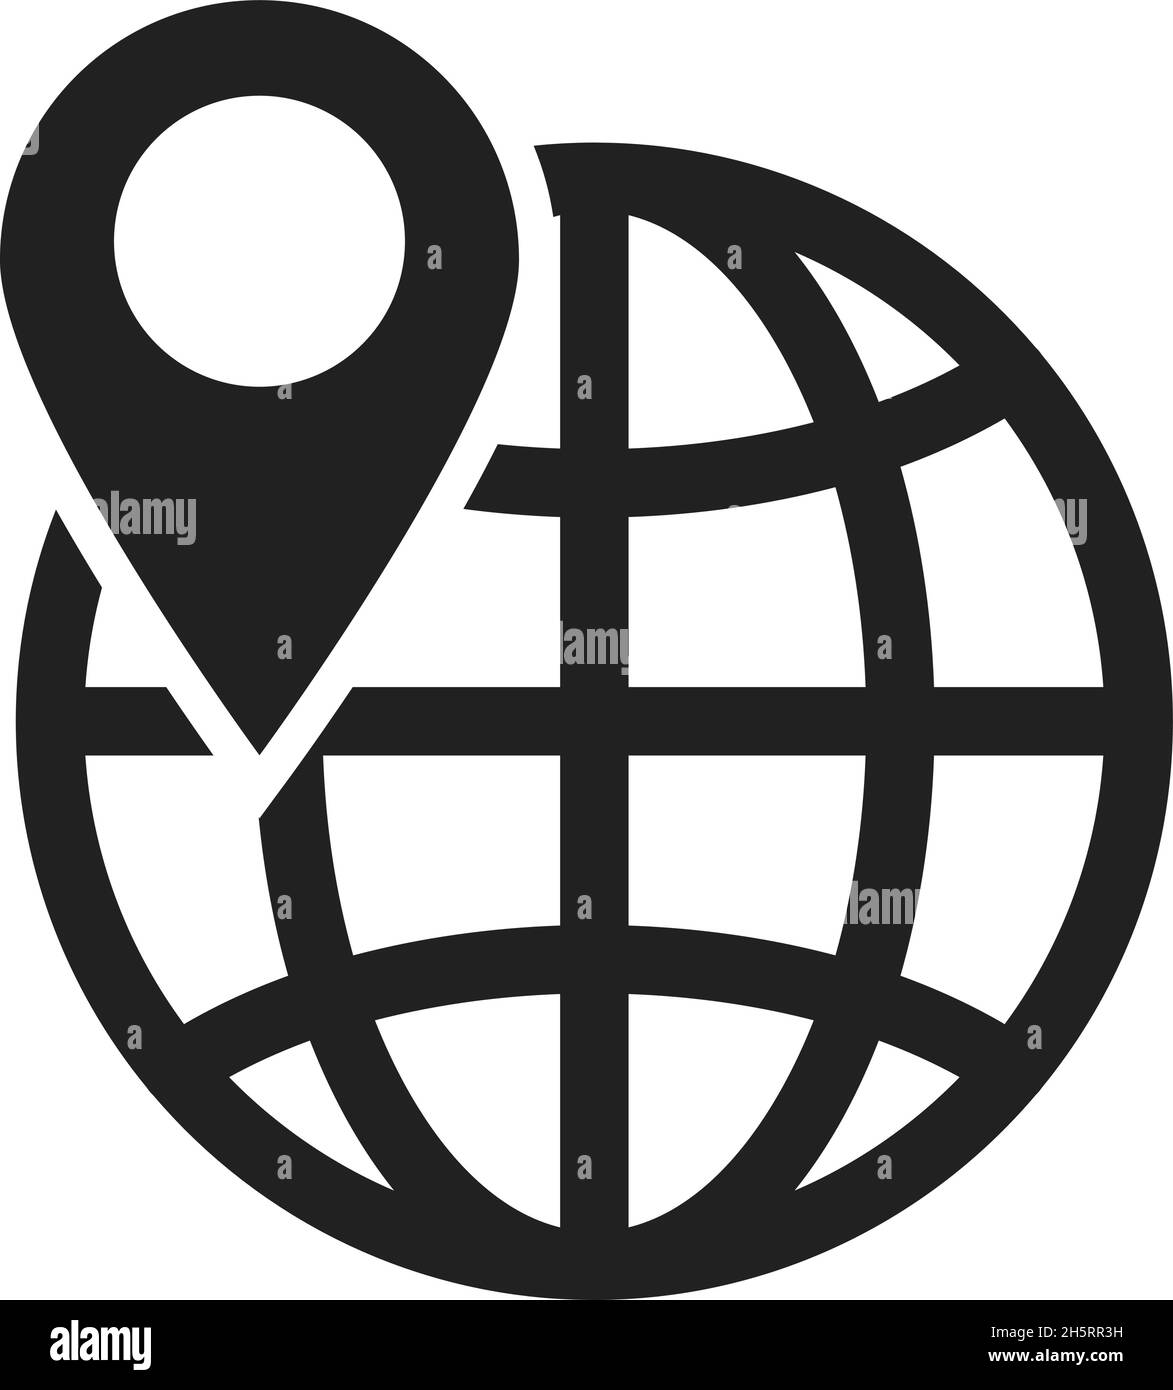 Welt- und Ortszeiger-Symbol im modernen Stil. Isoliertes Vektorgrafikdesign Stock Vektor